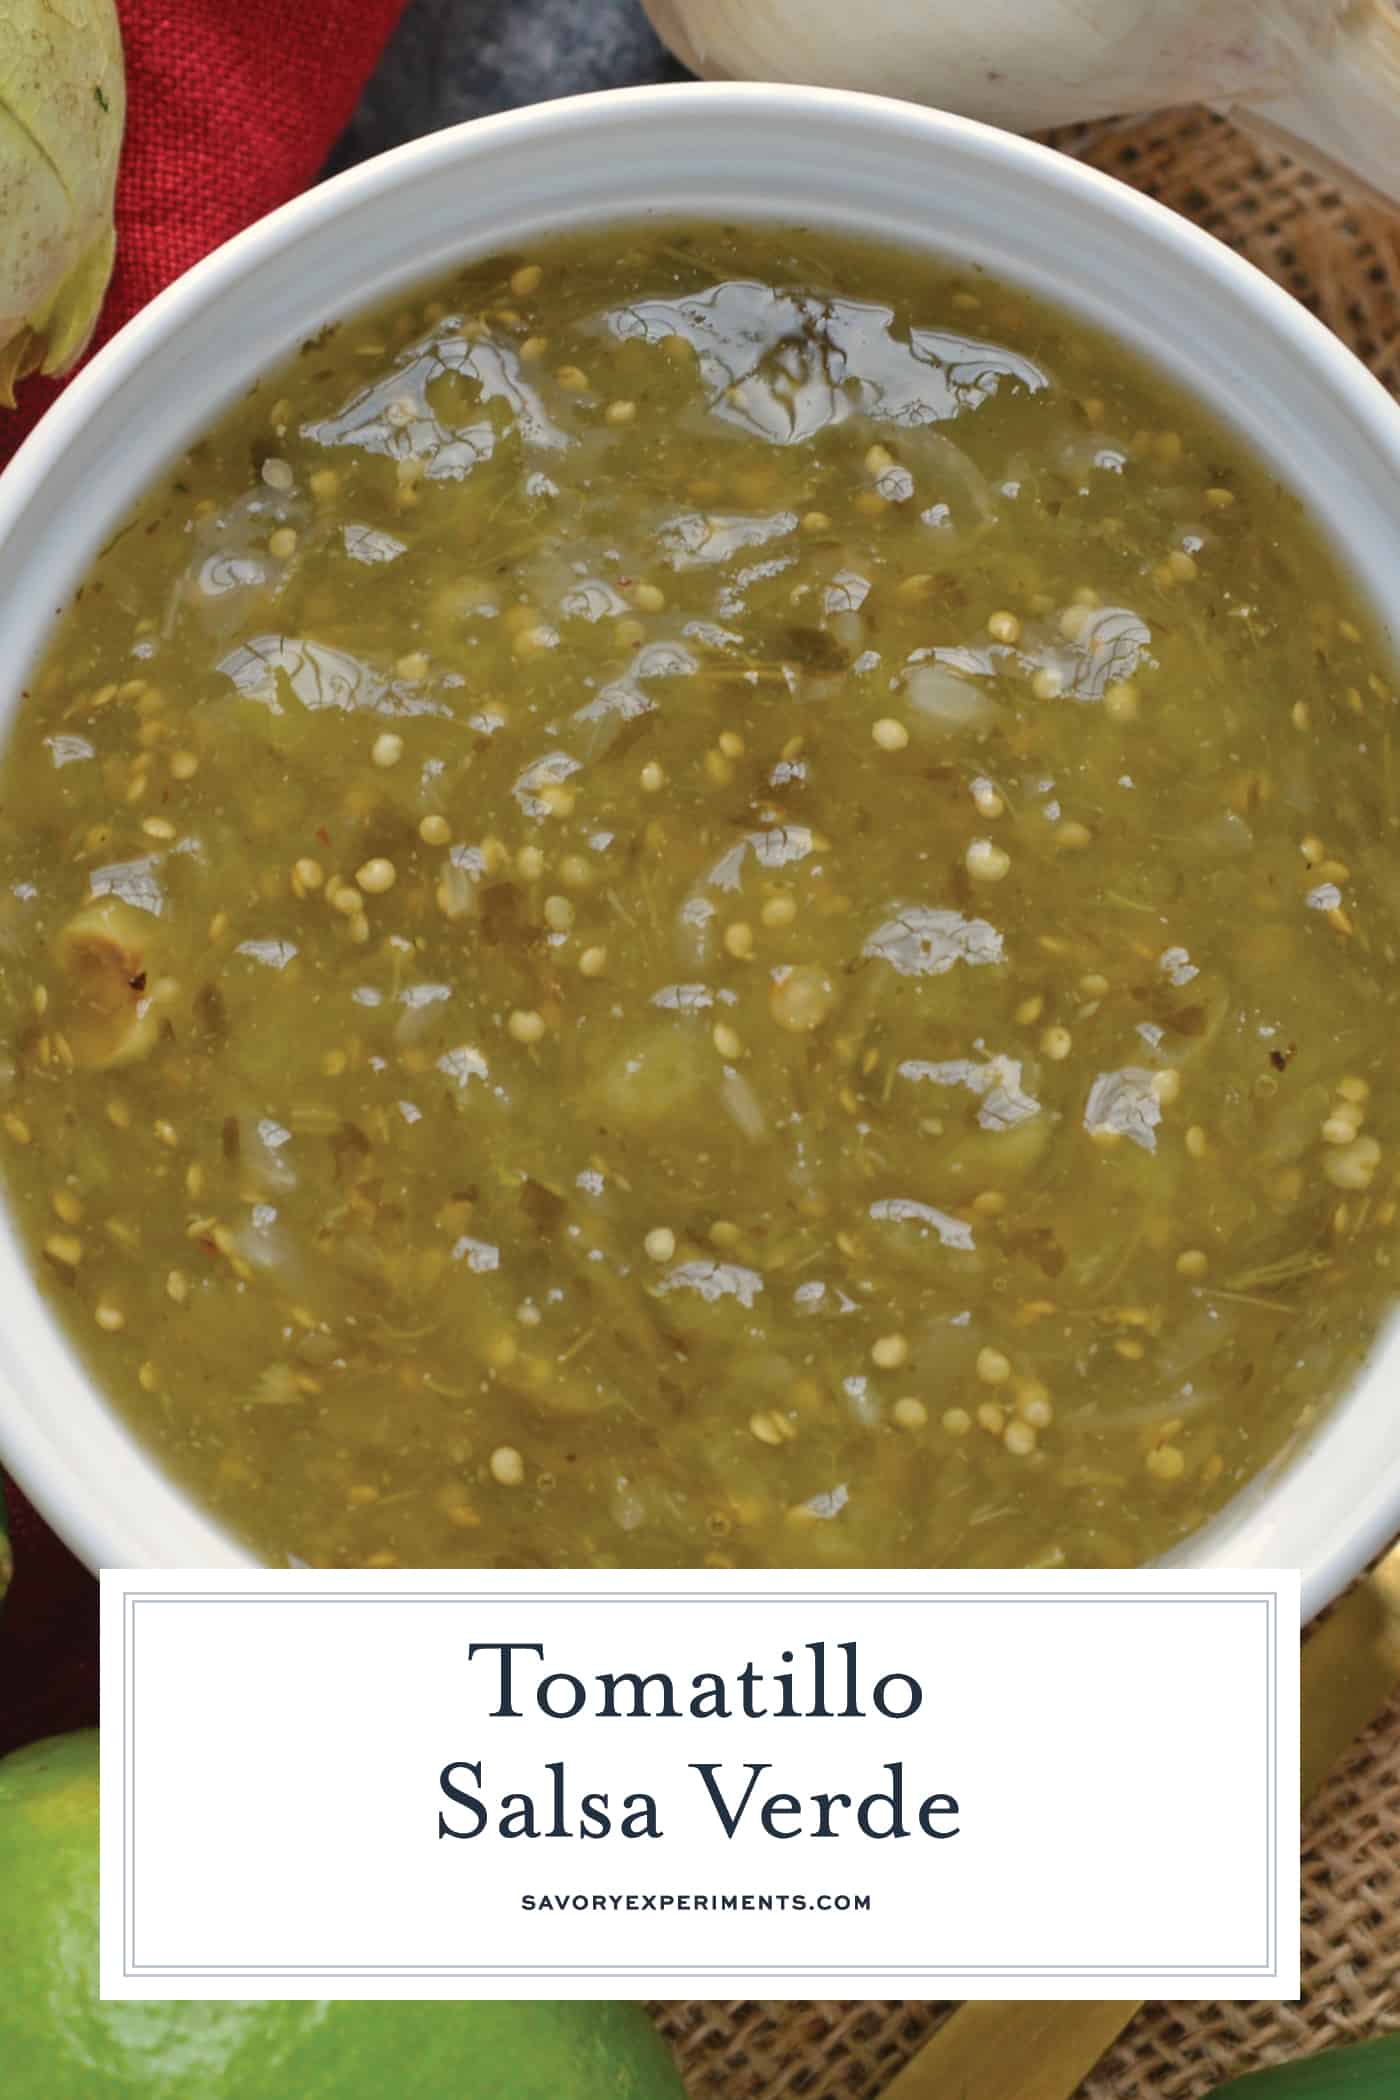 Tomatillo salsa verde recipe